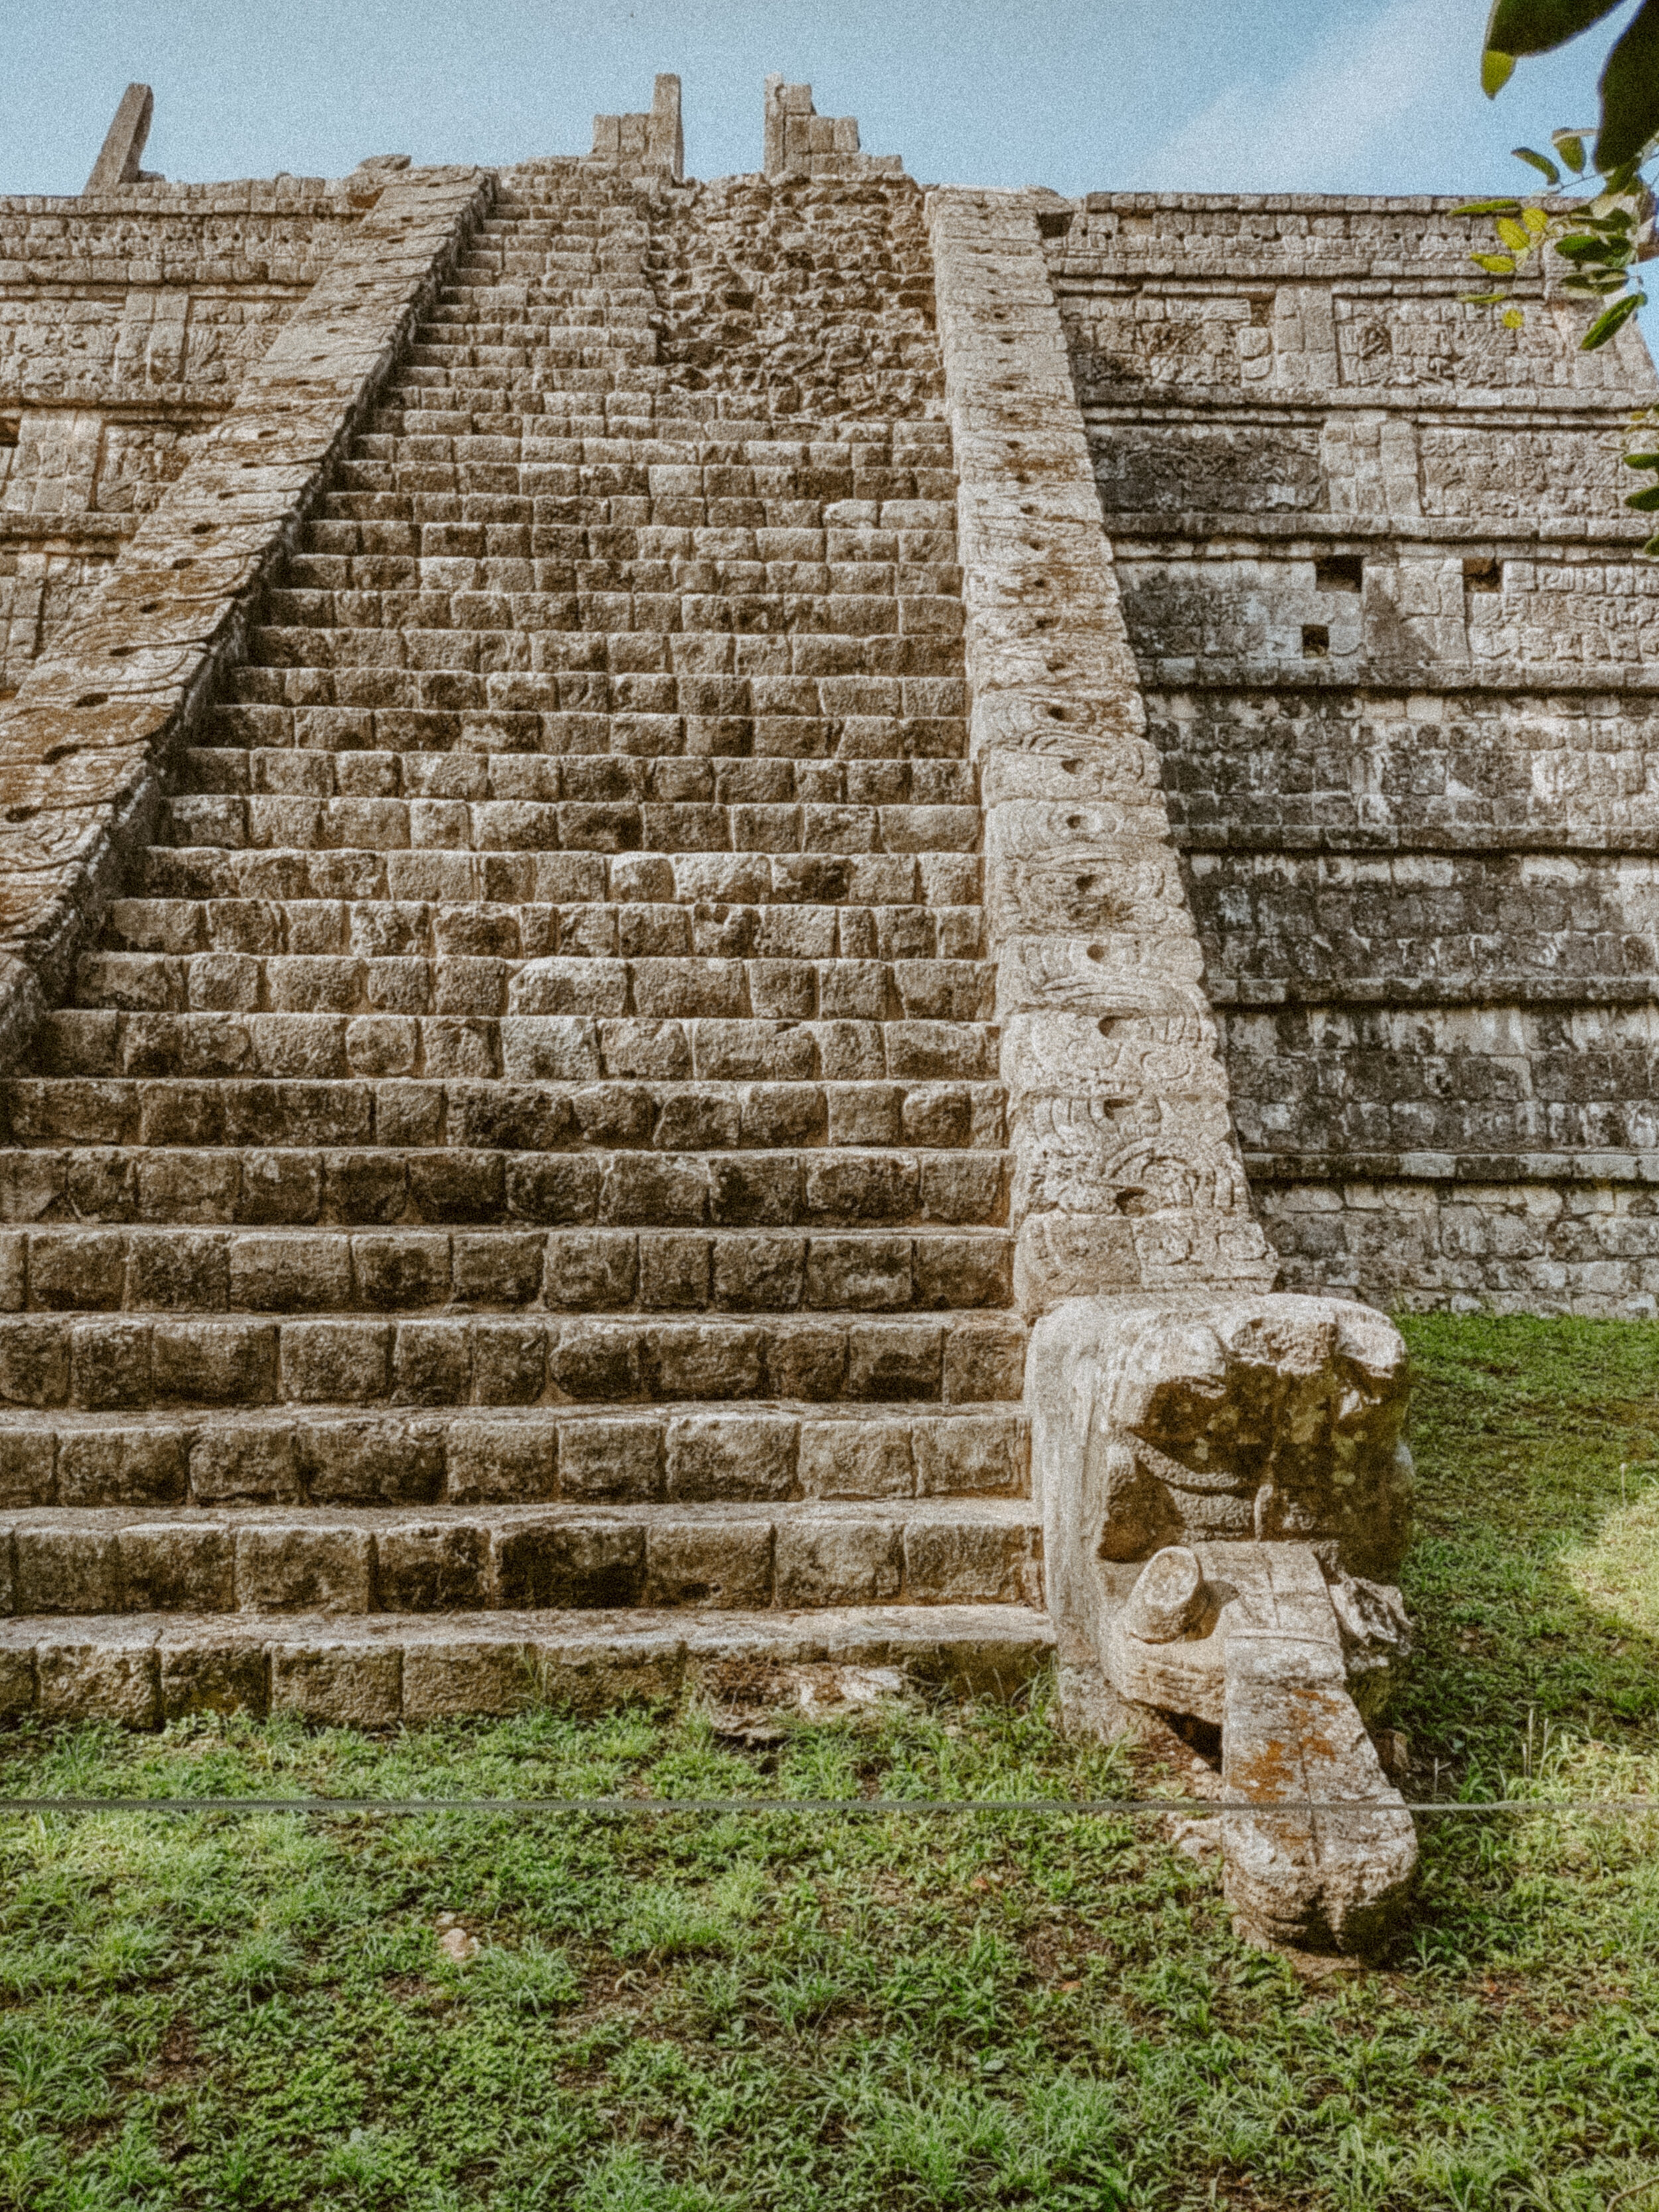 MyBestPlace - Ik Kil, the “Sacred Blue Cenote” of Yucatán